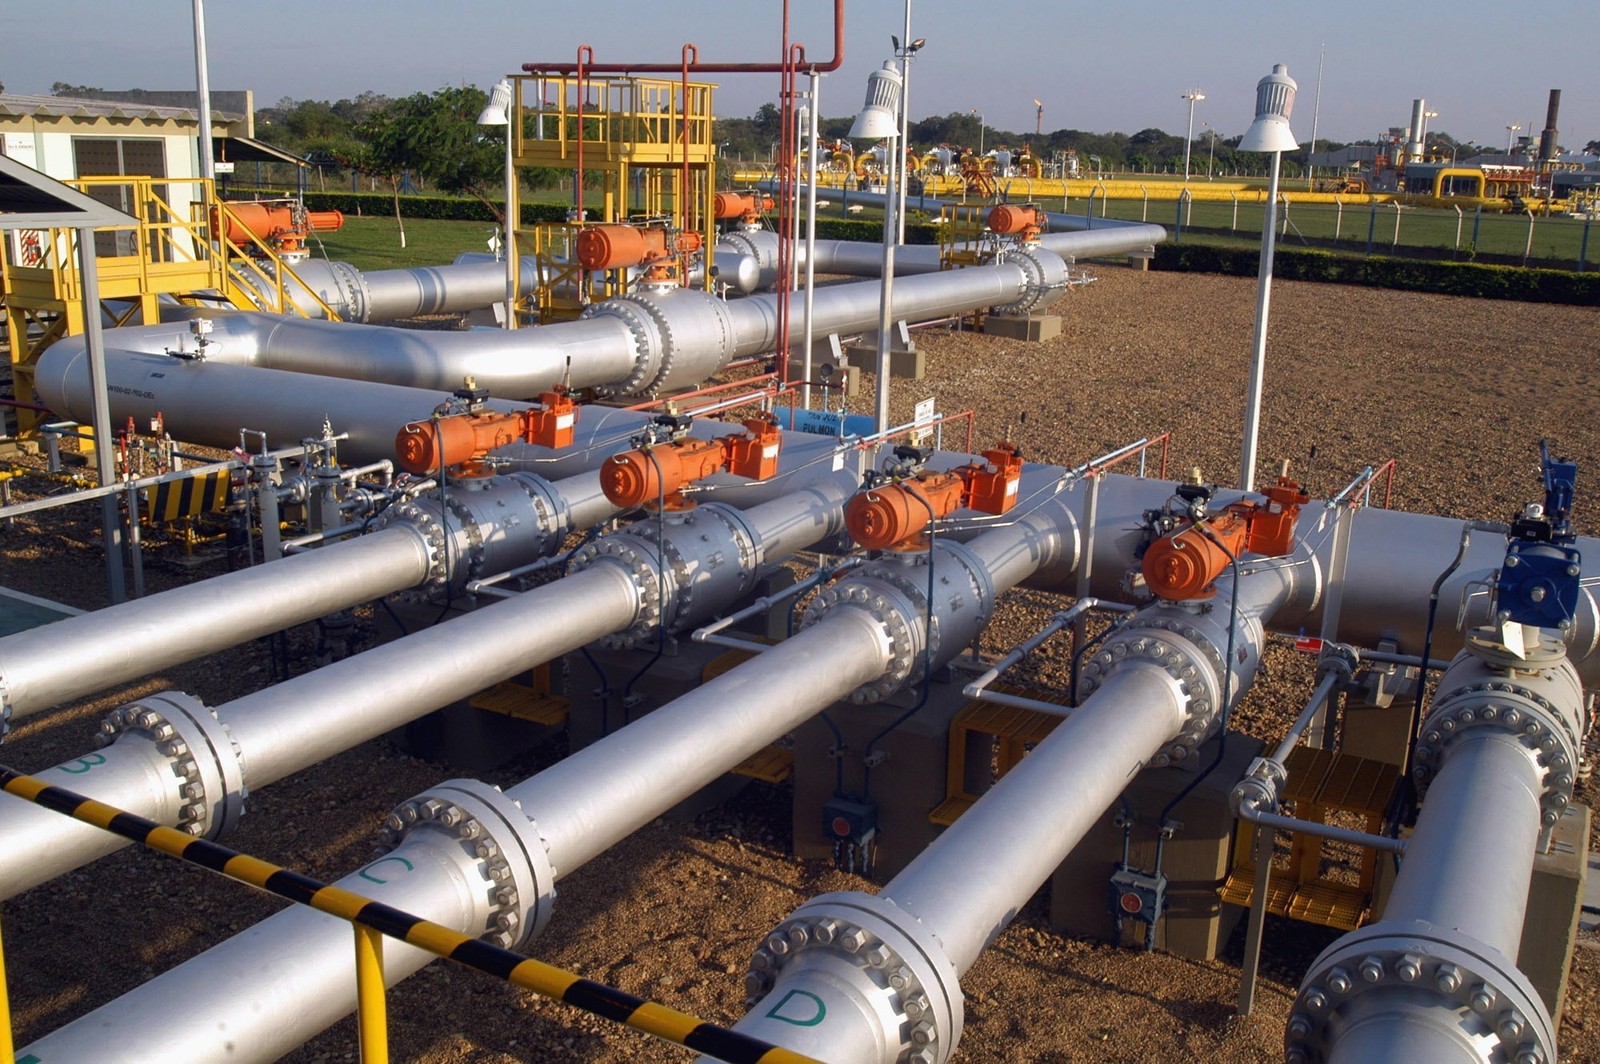 A Petrobra firmou acordo com o Cade para sair do setor de transporte e distribuição de gás natural. A companhia deve vender sua fatia no Gasoduto Brasil-Bolívia (foto)Bloomberg News